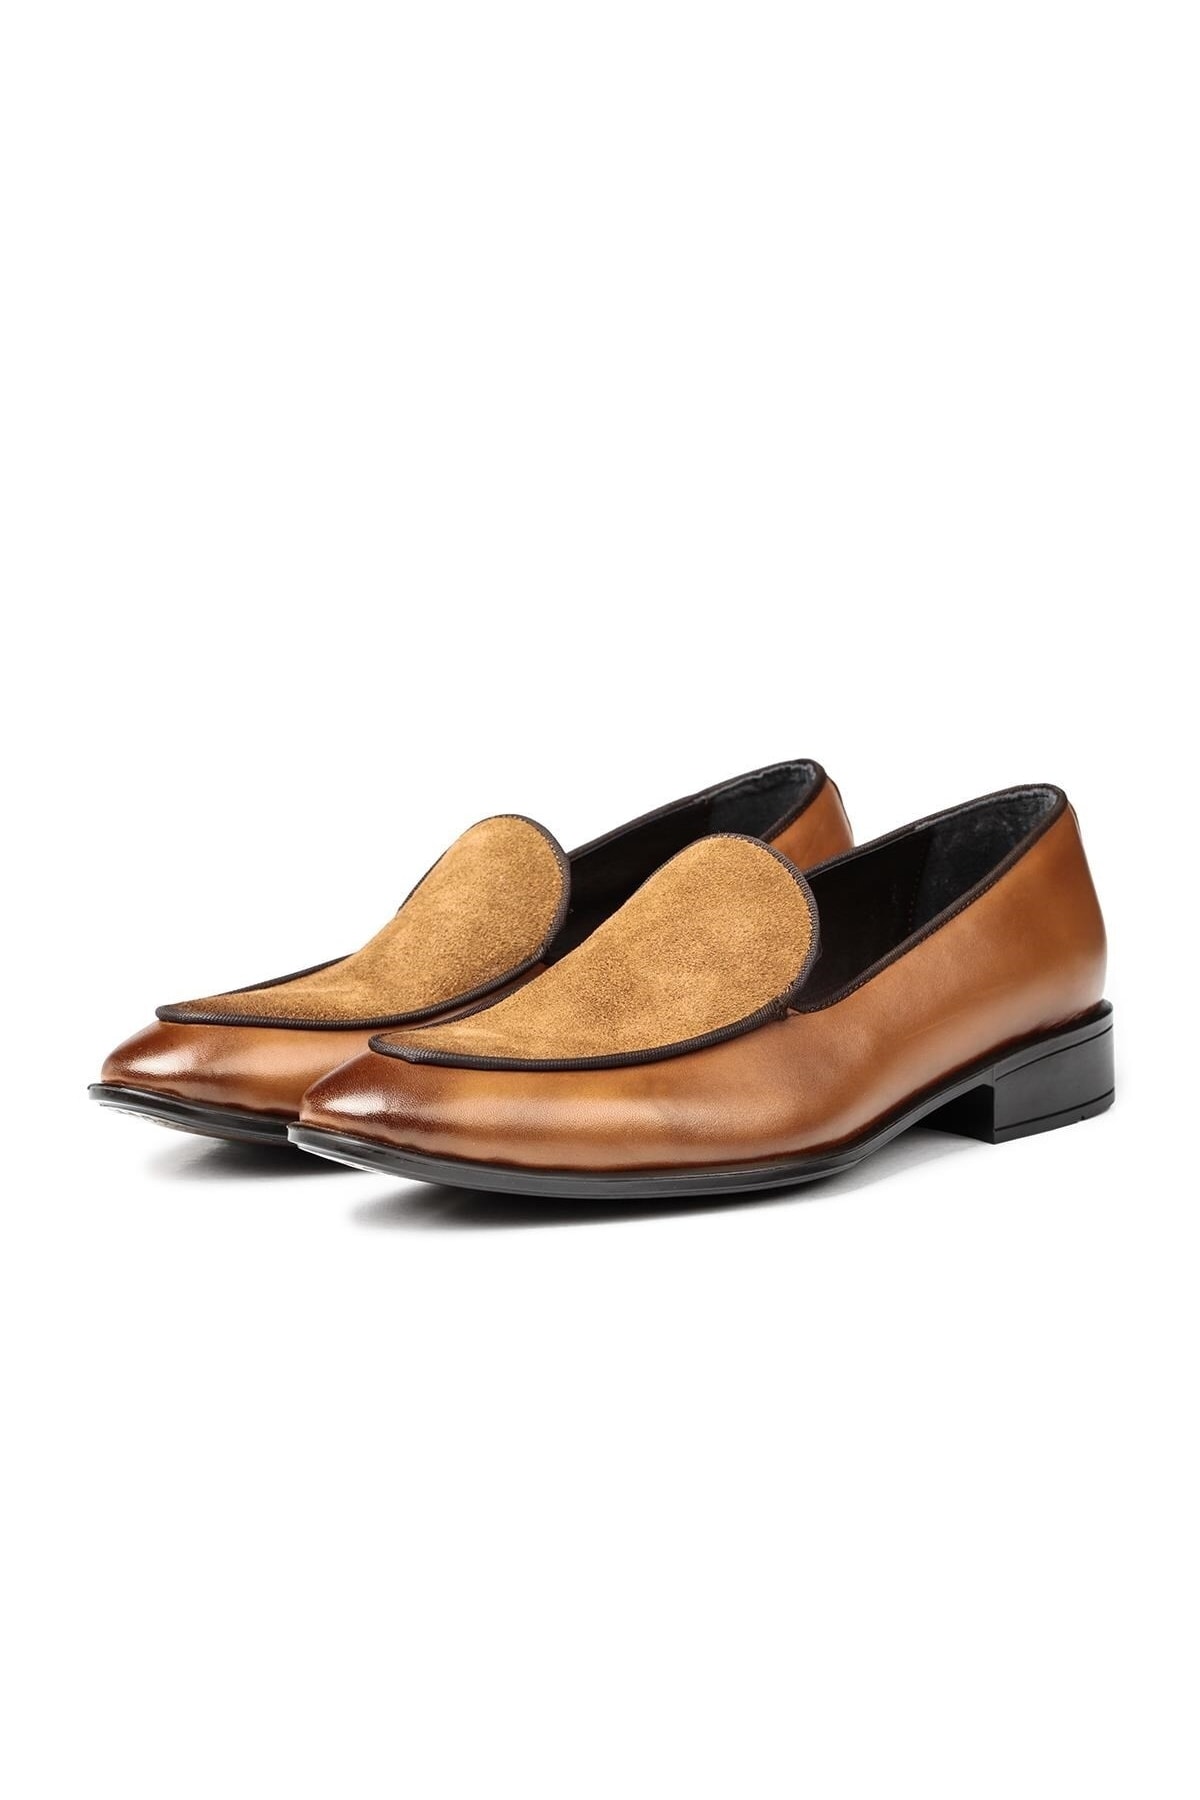 Levně Ducavelli Leather Men's Classic Shoes, Loafers Classic Shoes, Loafers